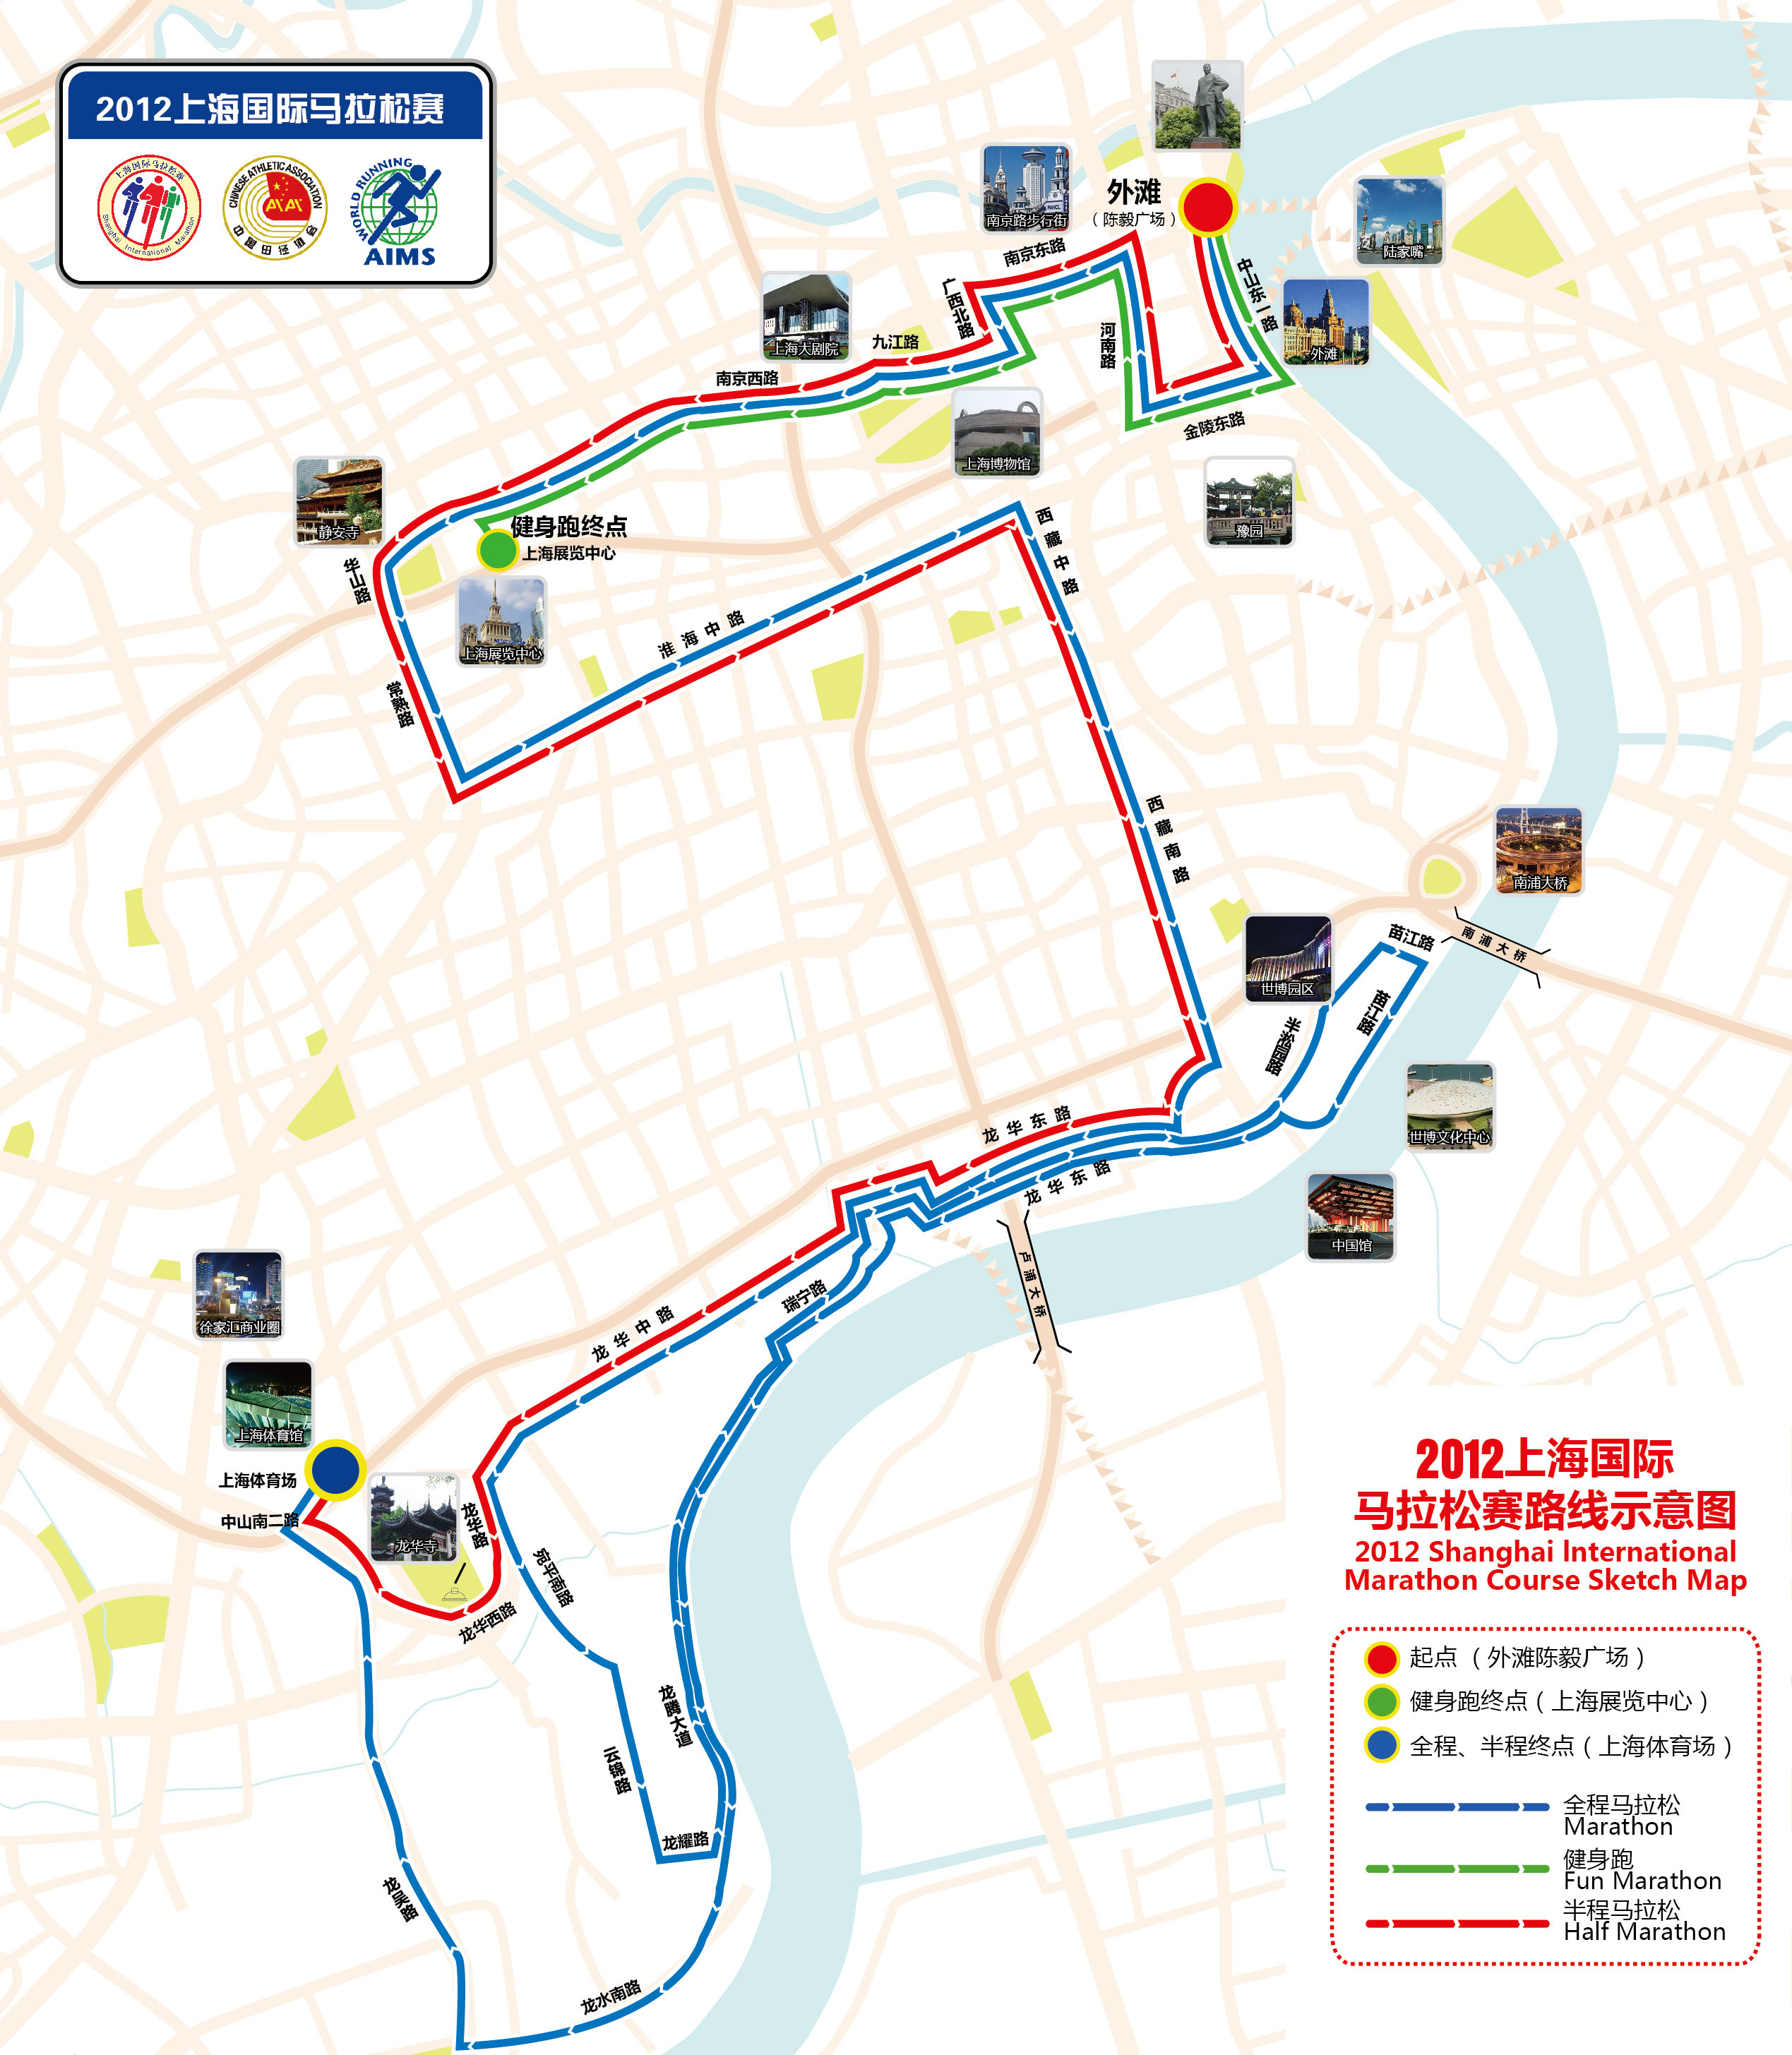 2012上海马拉松赛路线图公布 全程浦西黄金路段